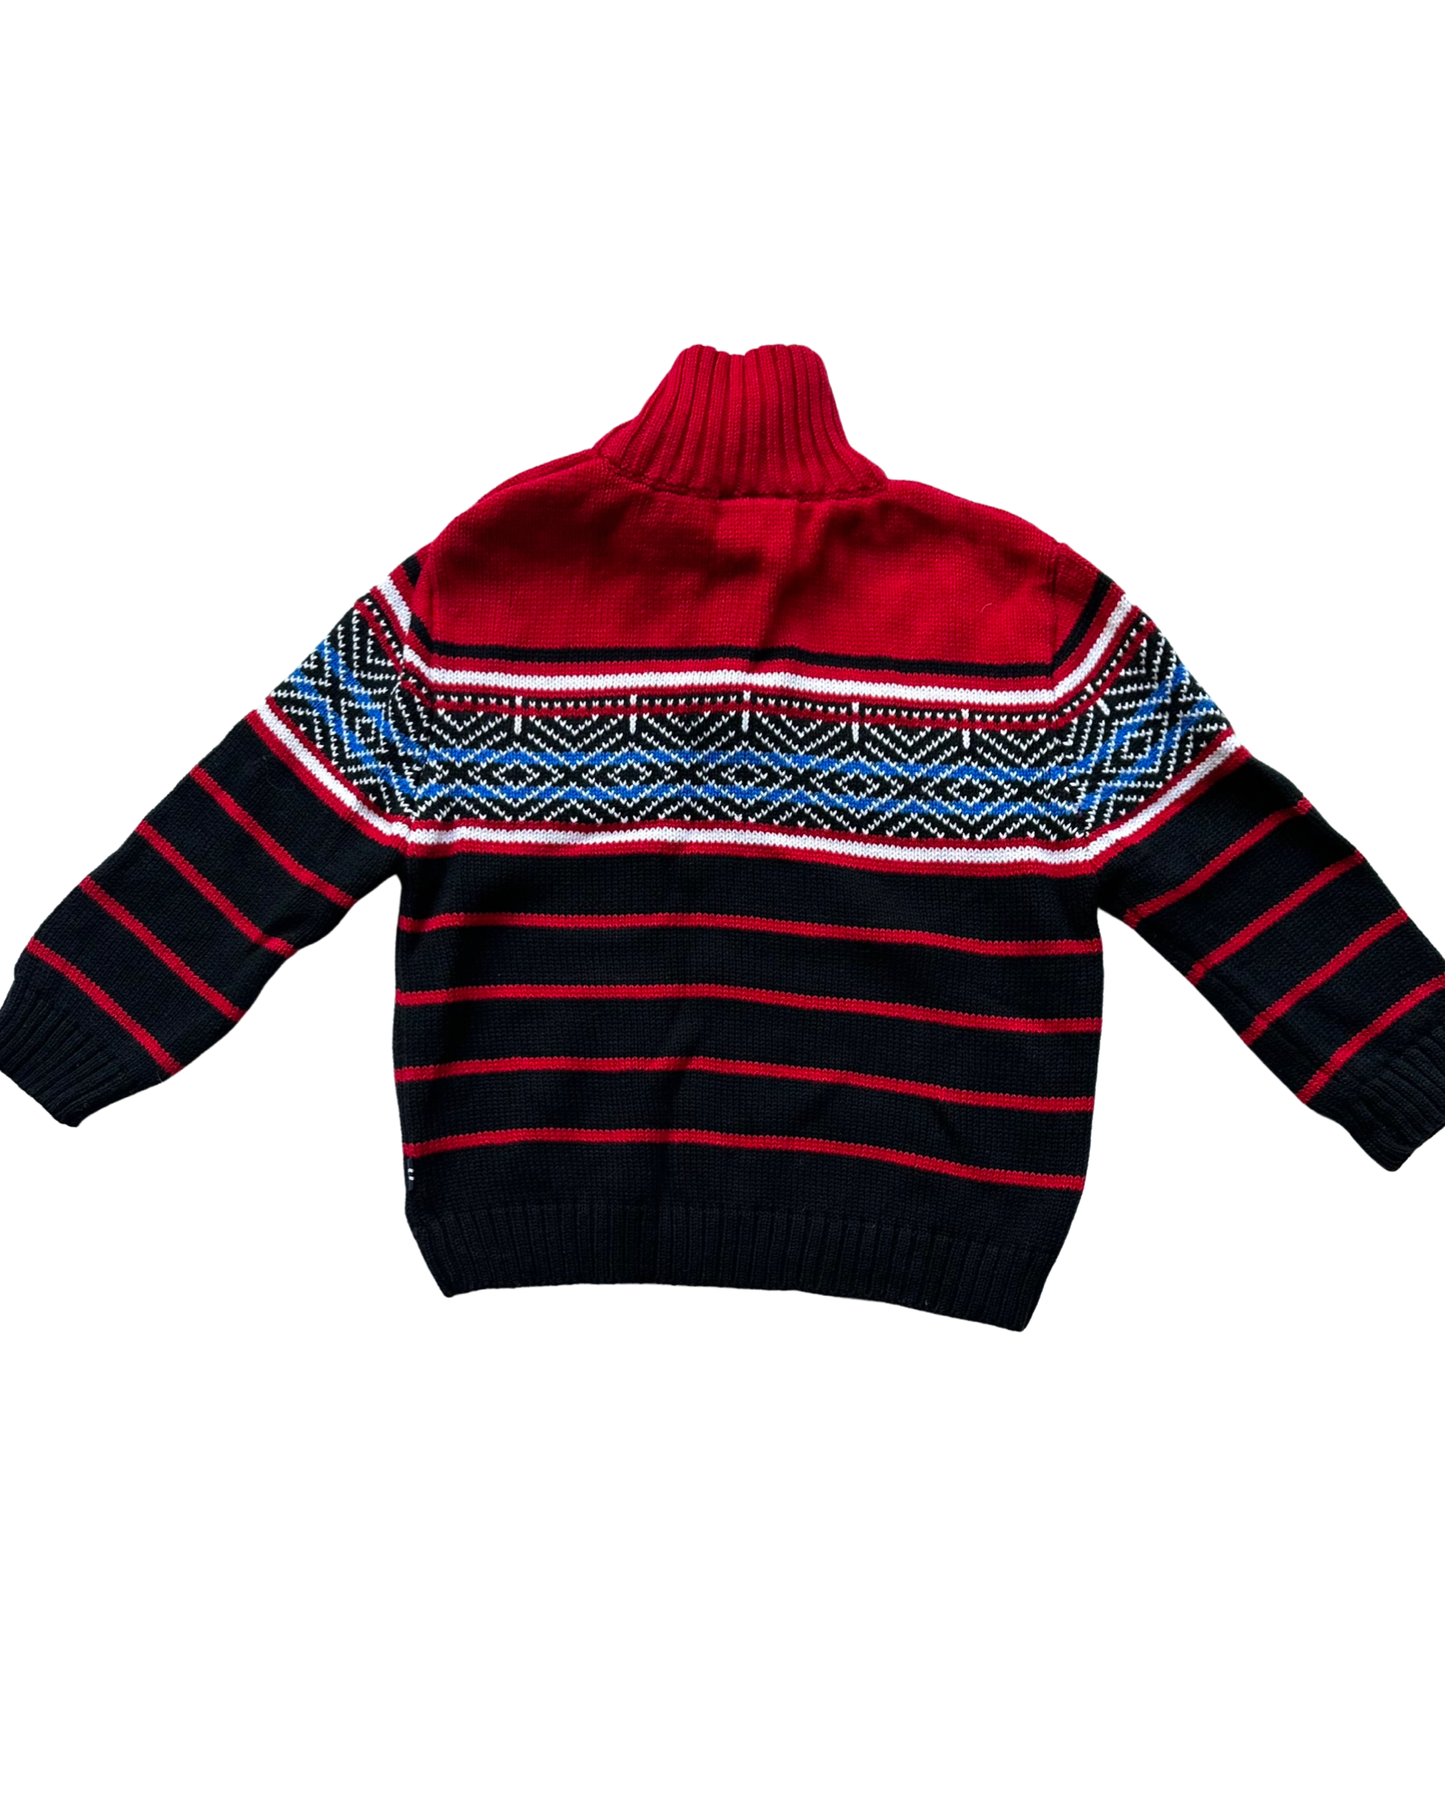 Vintage Nautica fairisle knit jumper (12-18mths)